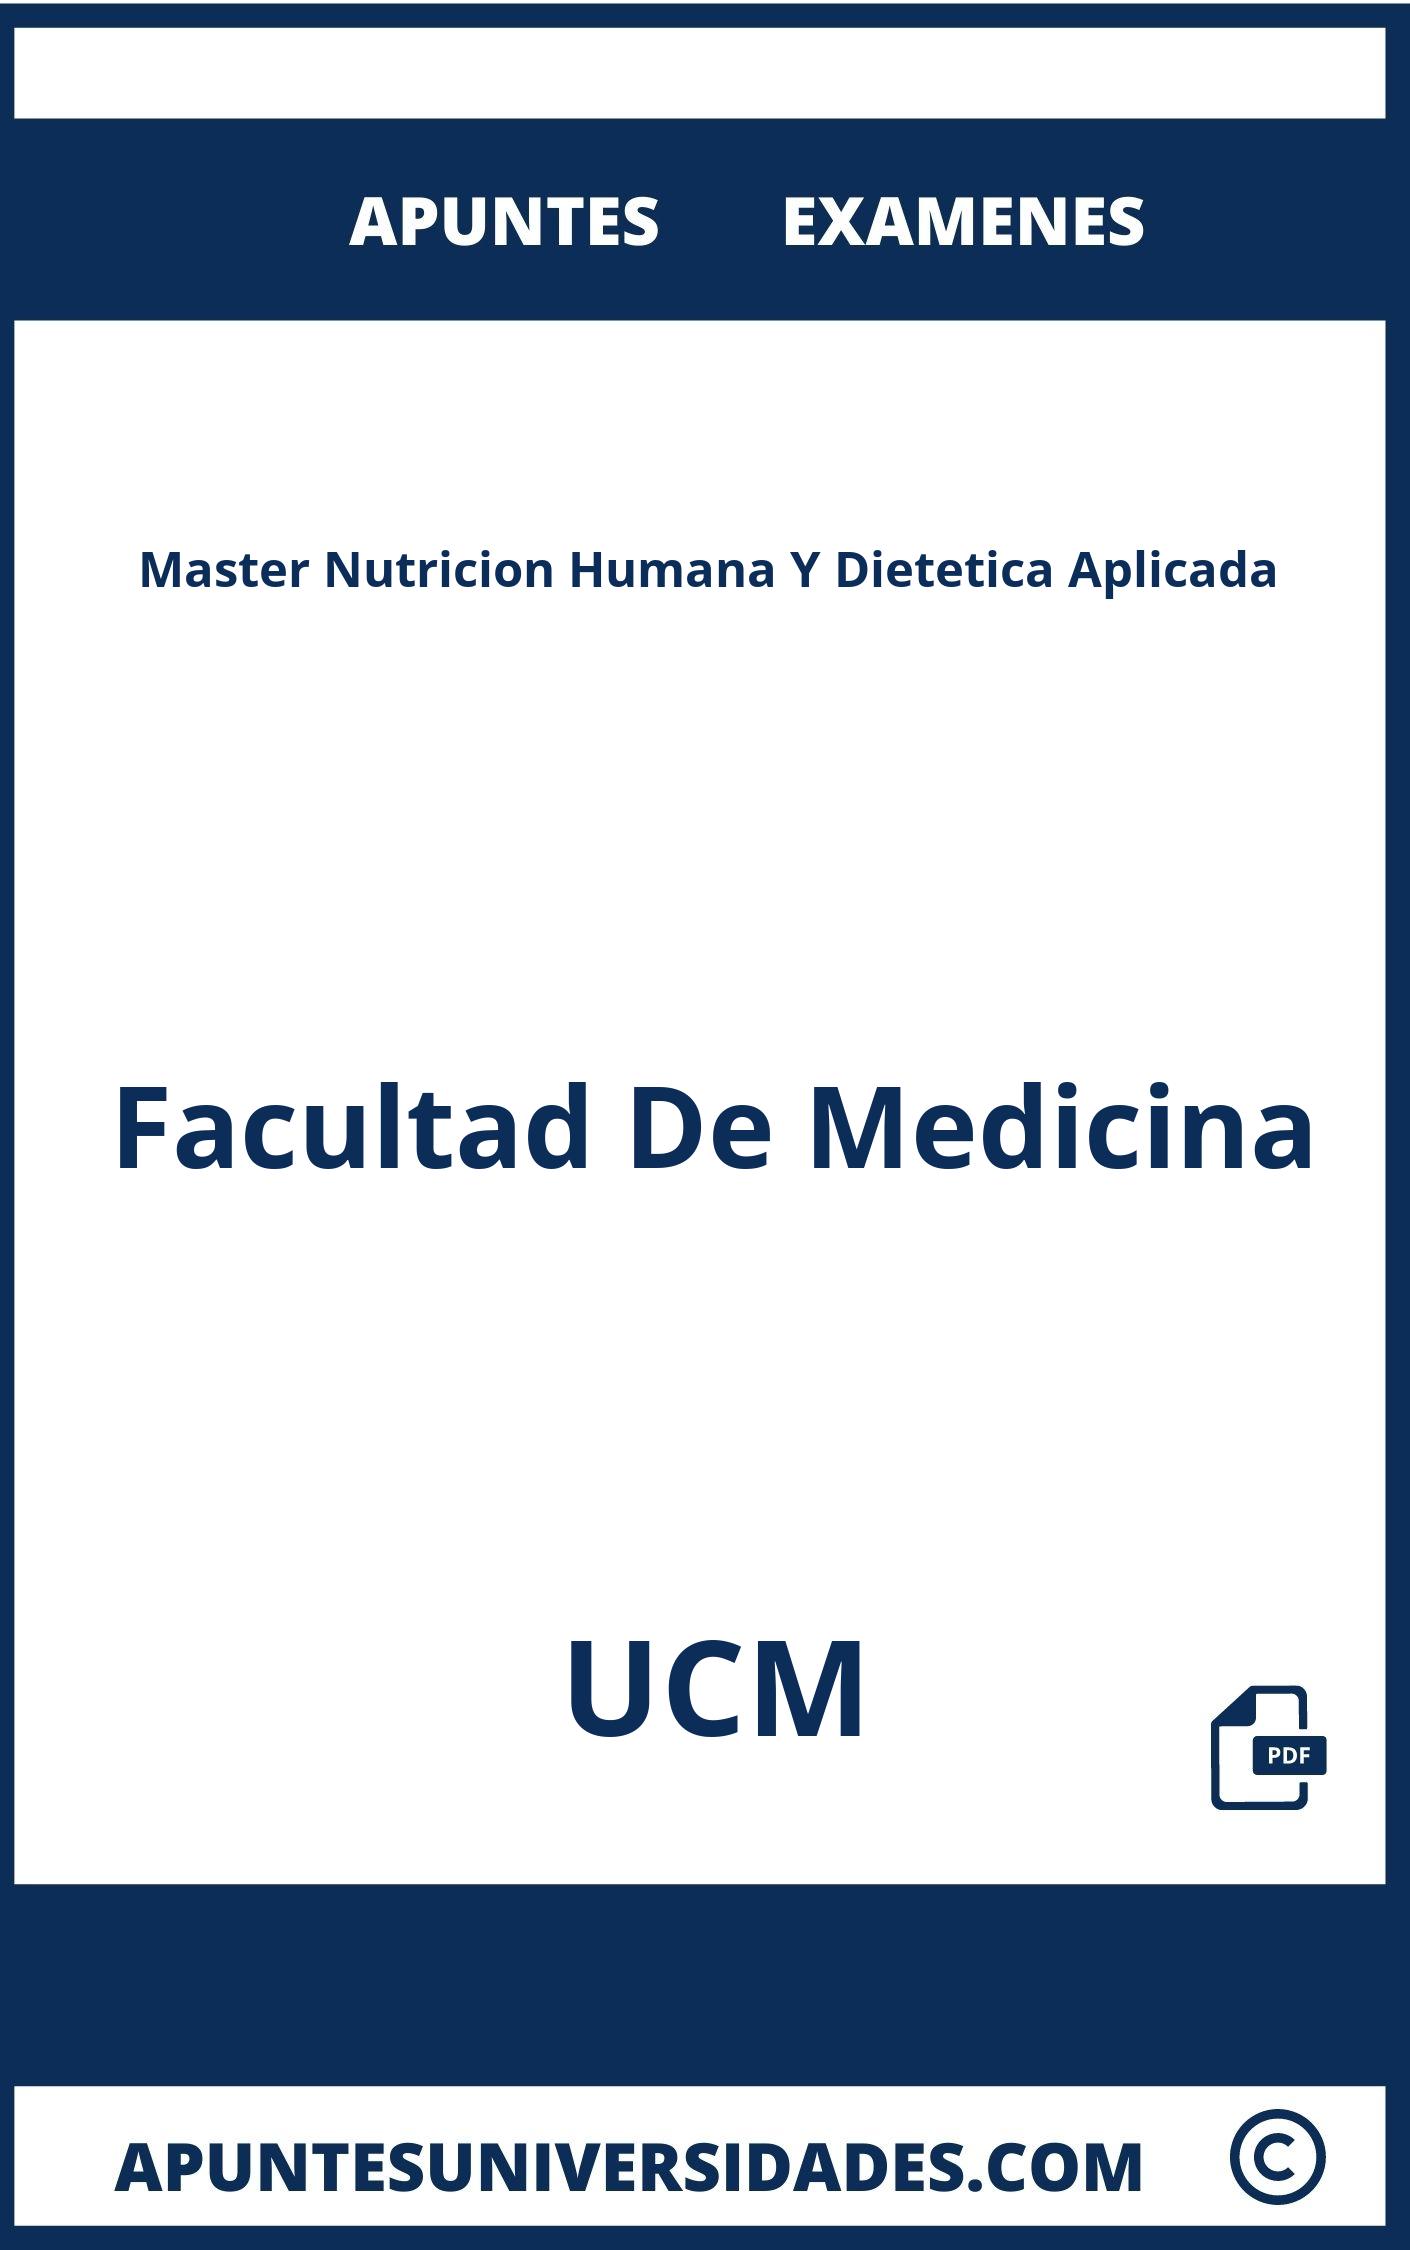 Examenes Master Nutricion Humana Y Dietetica Aplicada UCM y Apuntes